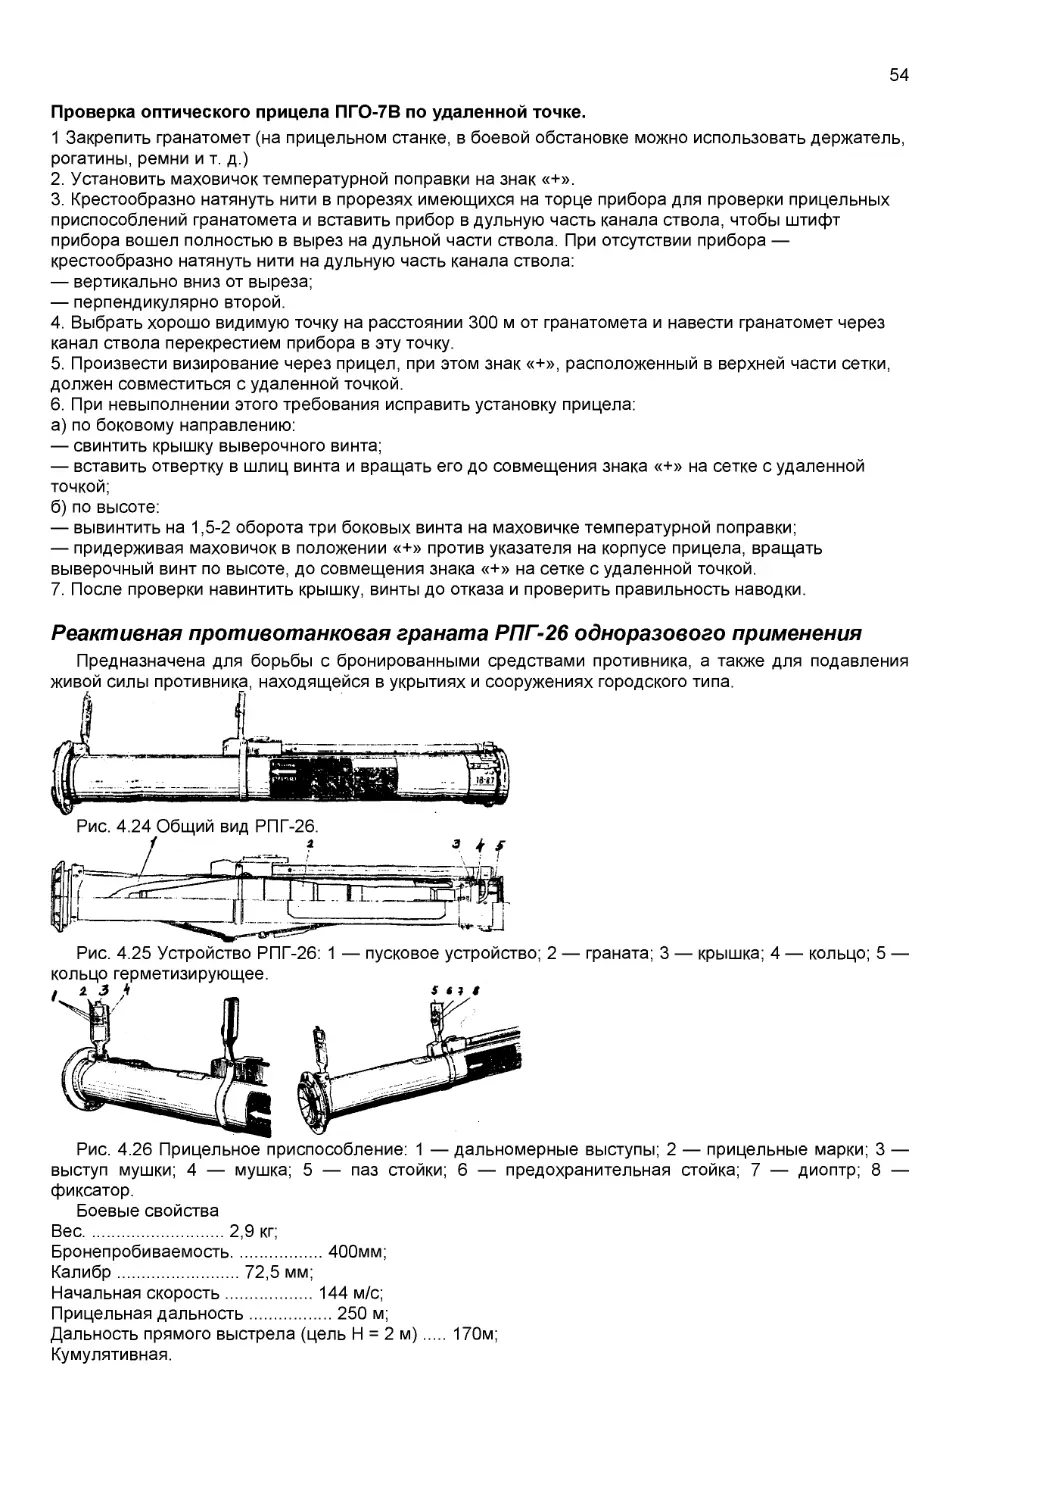 Реактивная противотанковая граната РПГ-26 одноразового применения